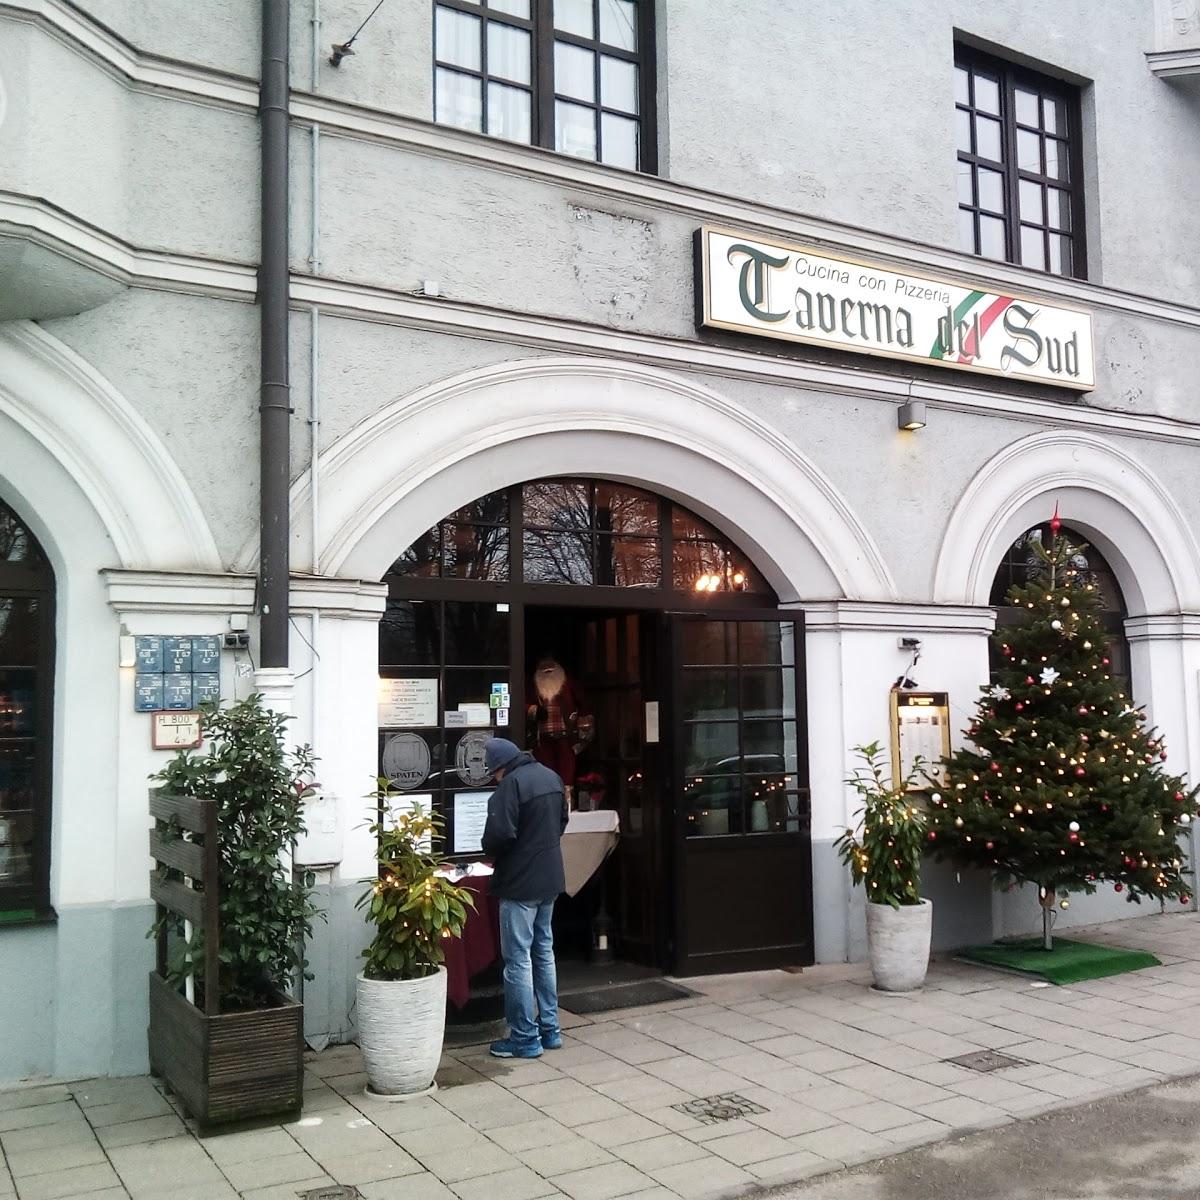 Restaurant "Taverna del Sud" in München